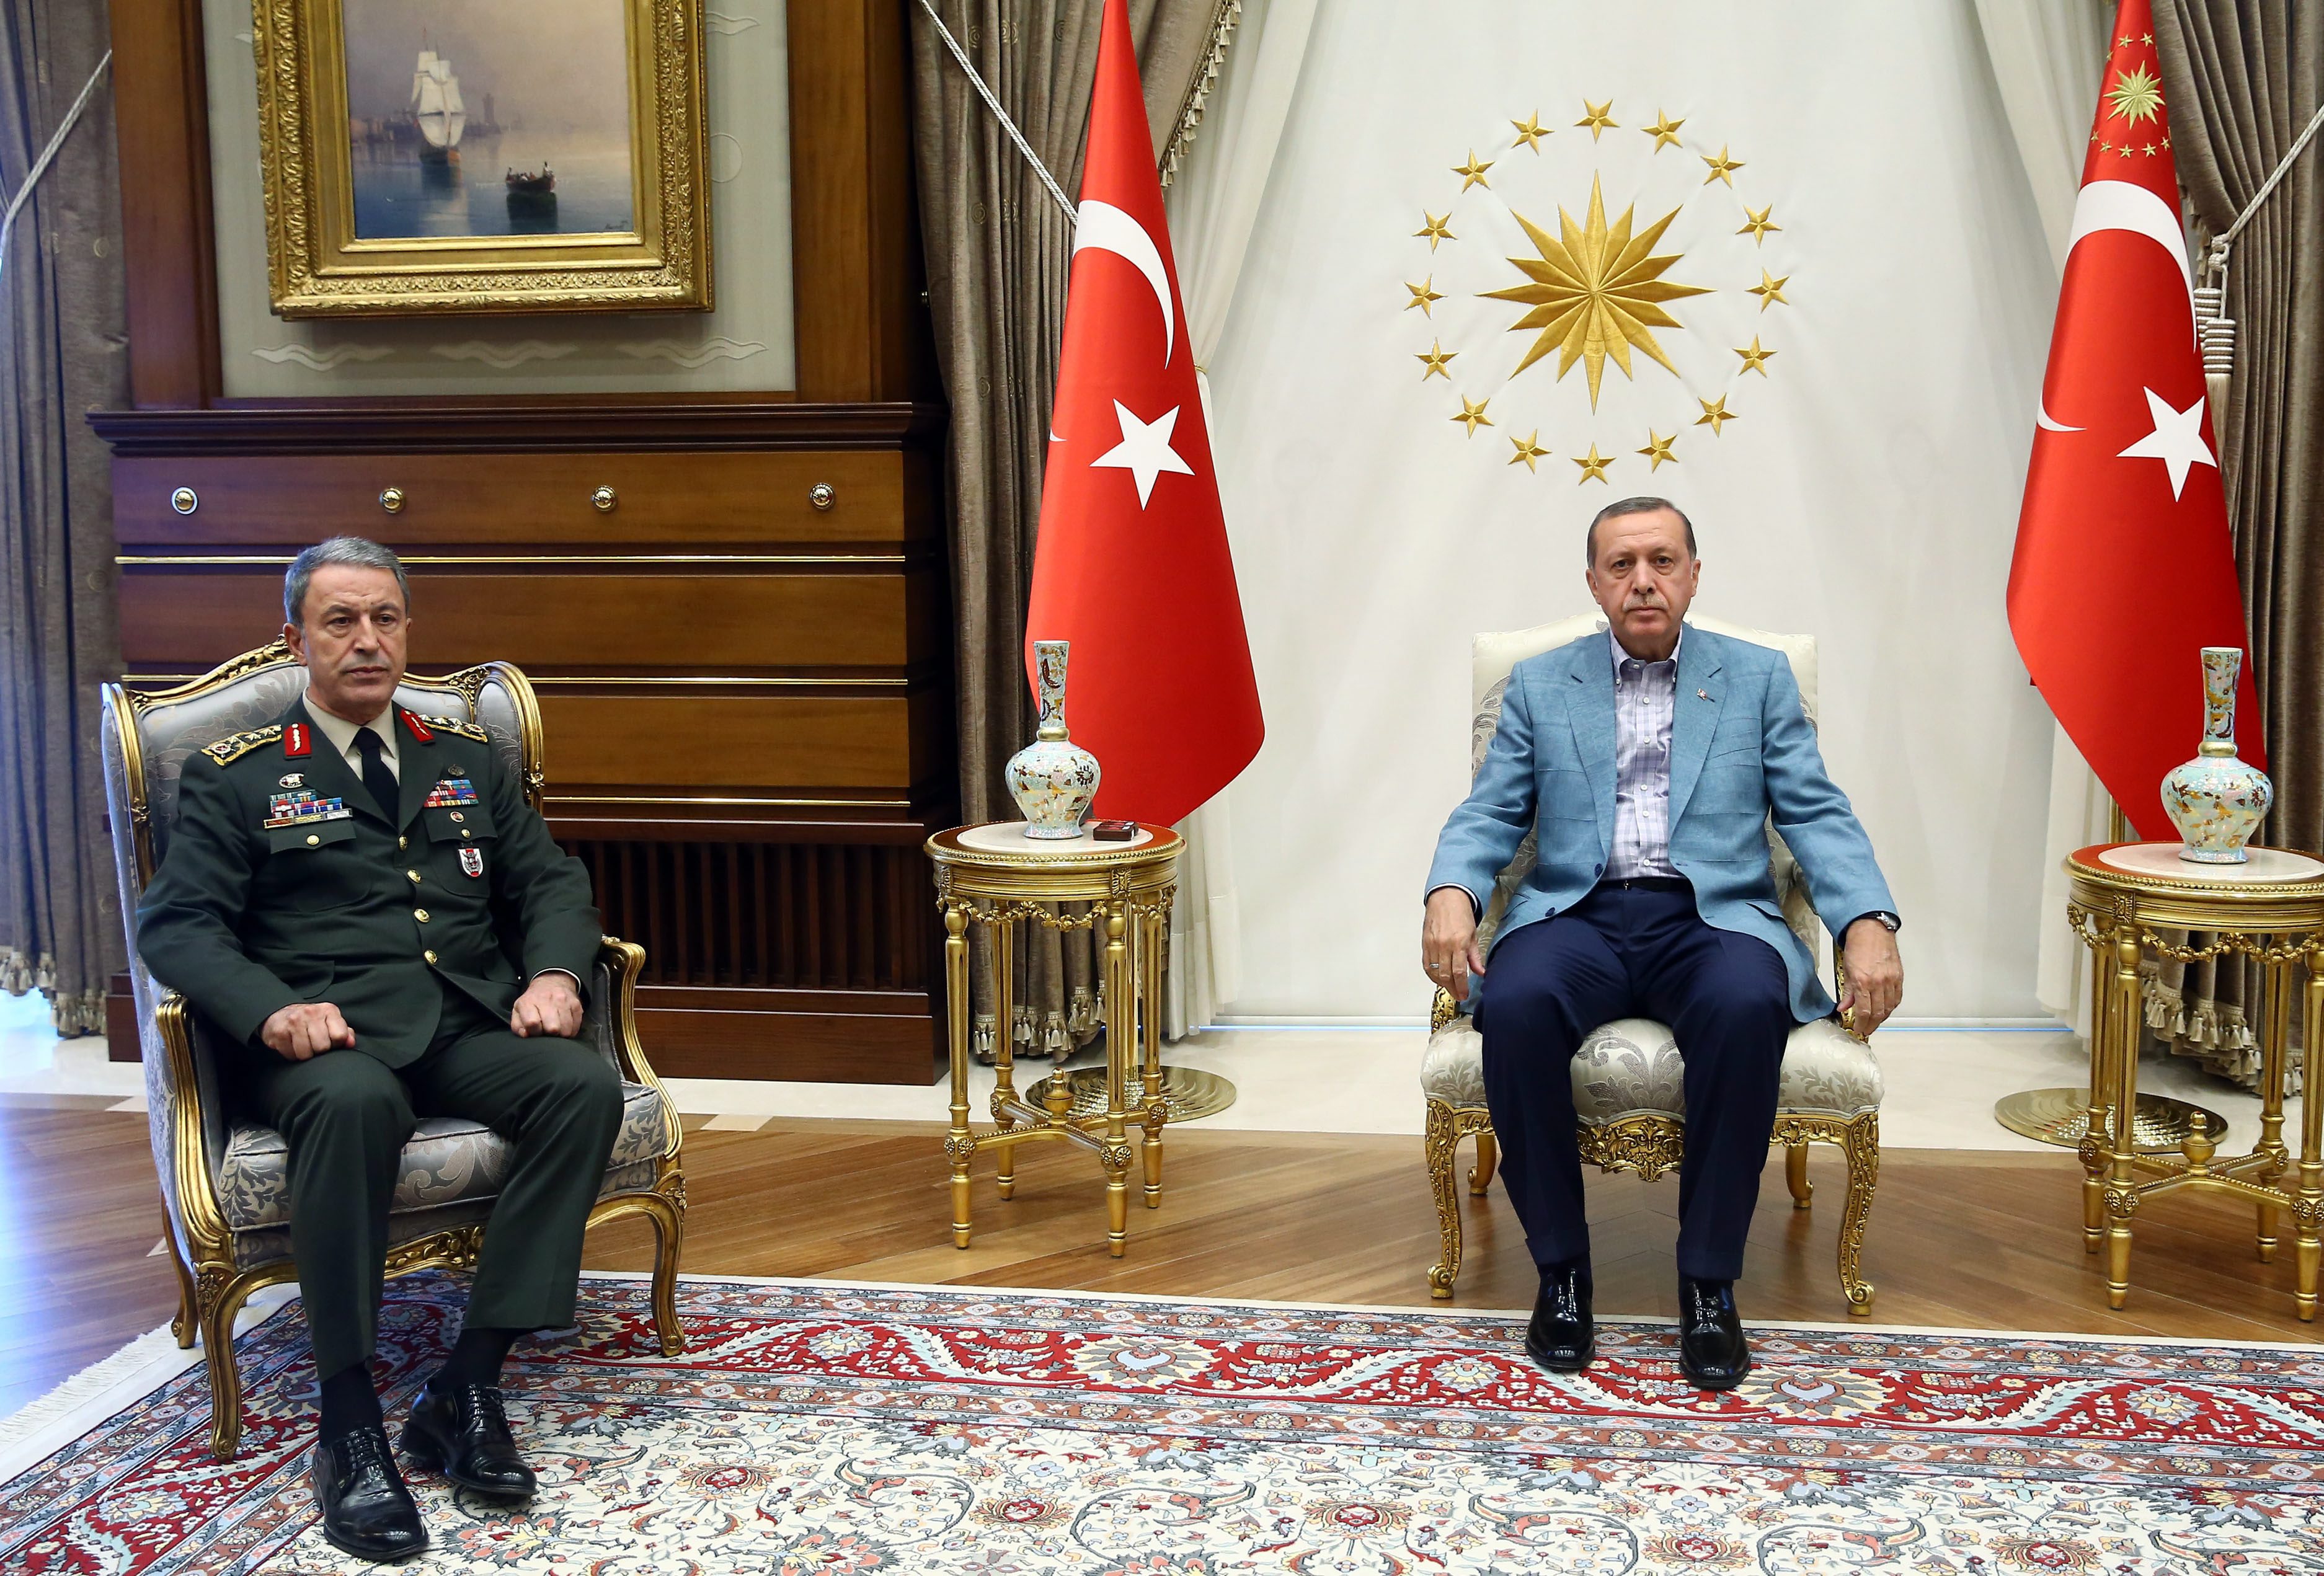 Παραμένει ο στρατηγός Ακάρ στην ηγεσία των Ενόπλων Δυνάμεων της Τουρκίας